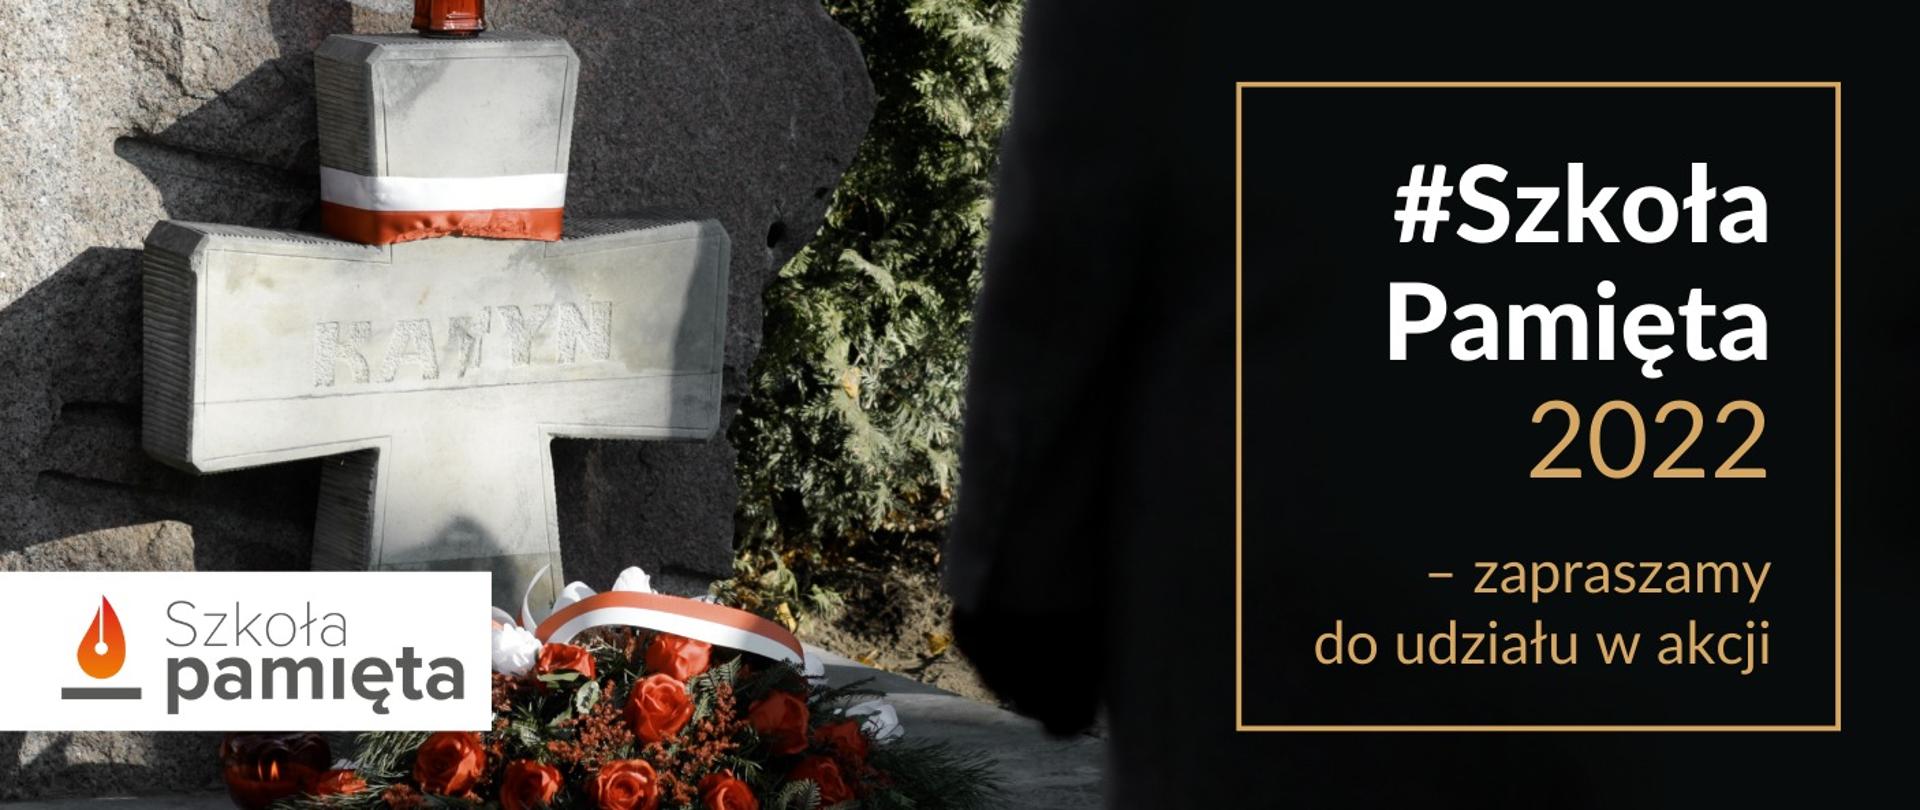 Na tle bukietu kwiatów i cmentarnego krzyża z napisem Katyń i biało-czerwoną wstążką napis Szkoła pamięta 2022 - zapraszamy do udziału w akcji.